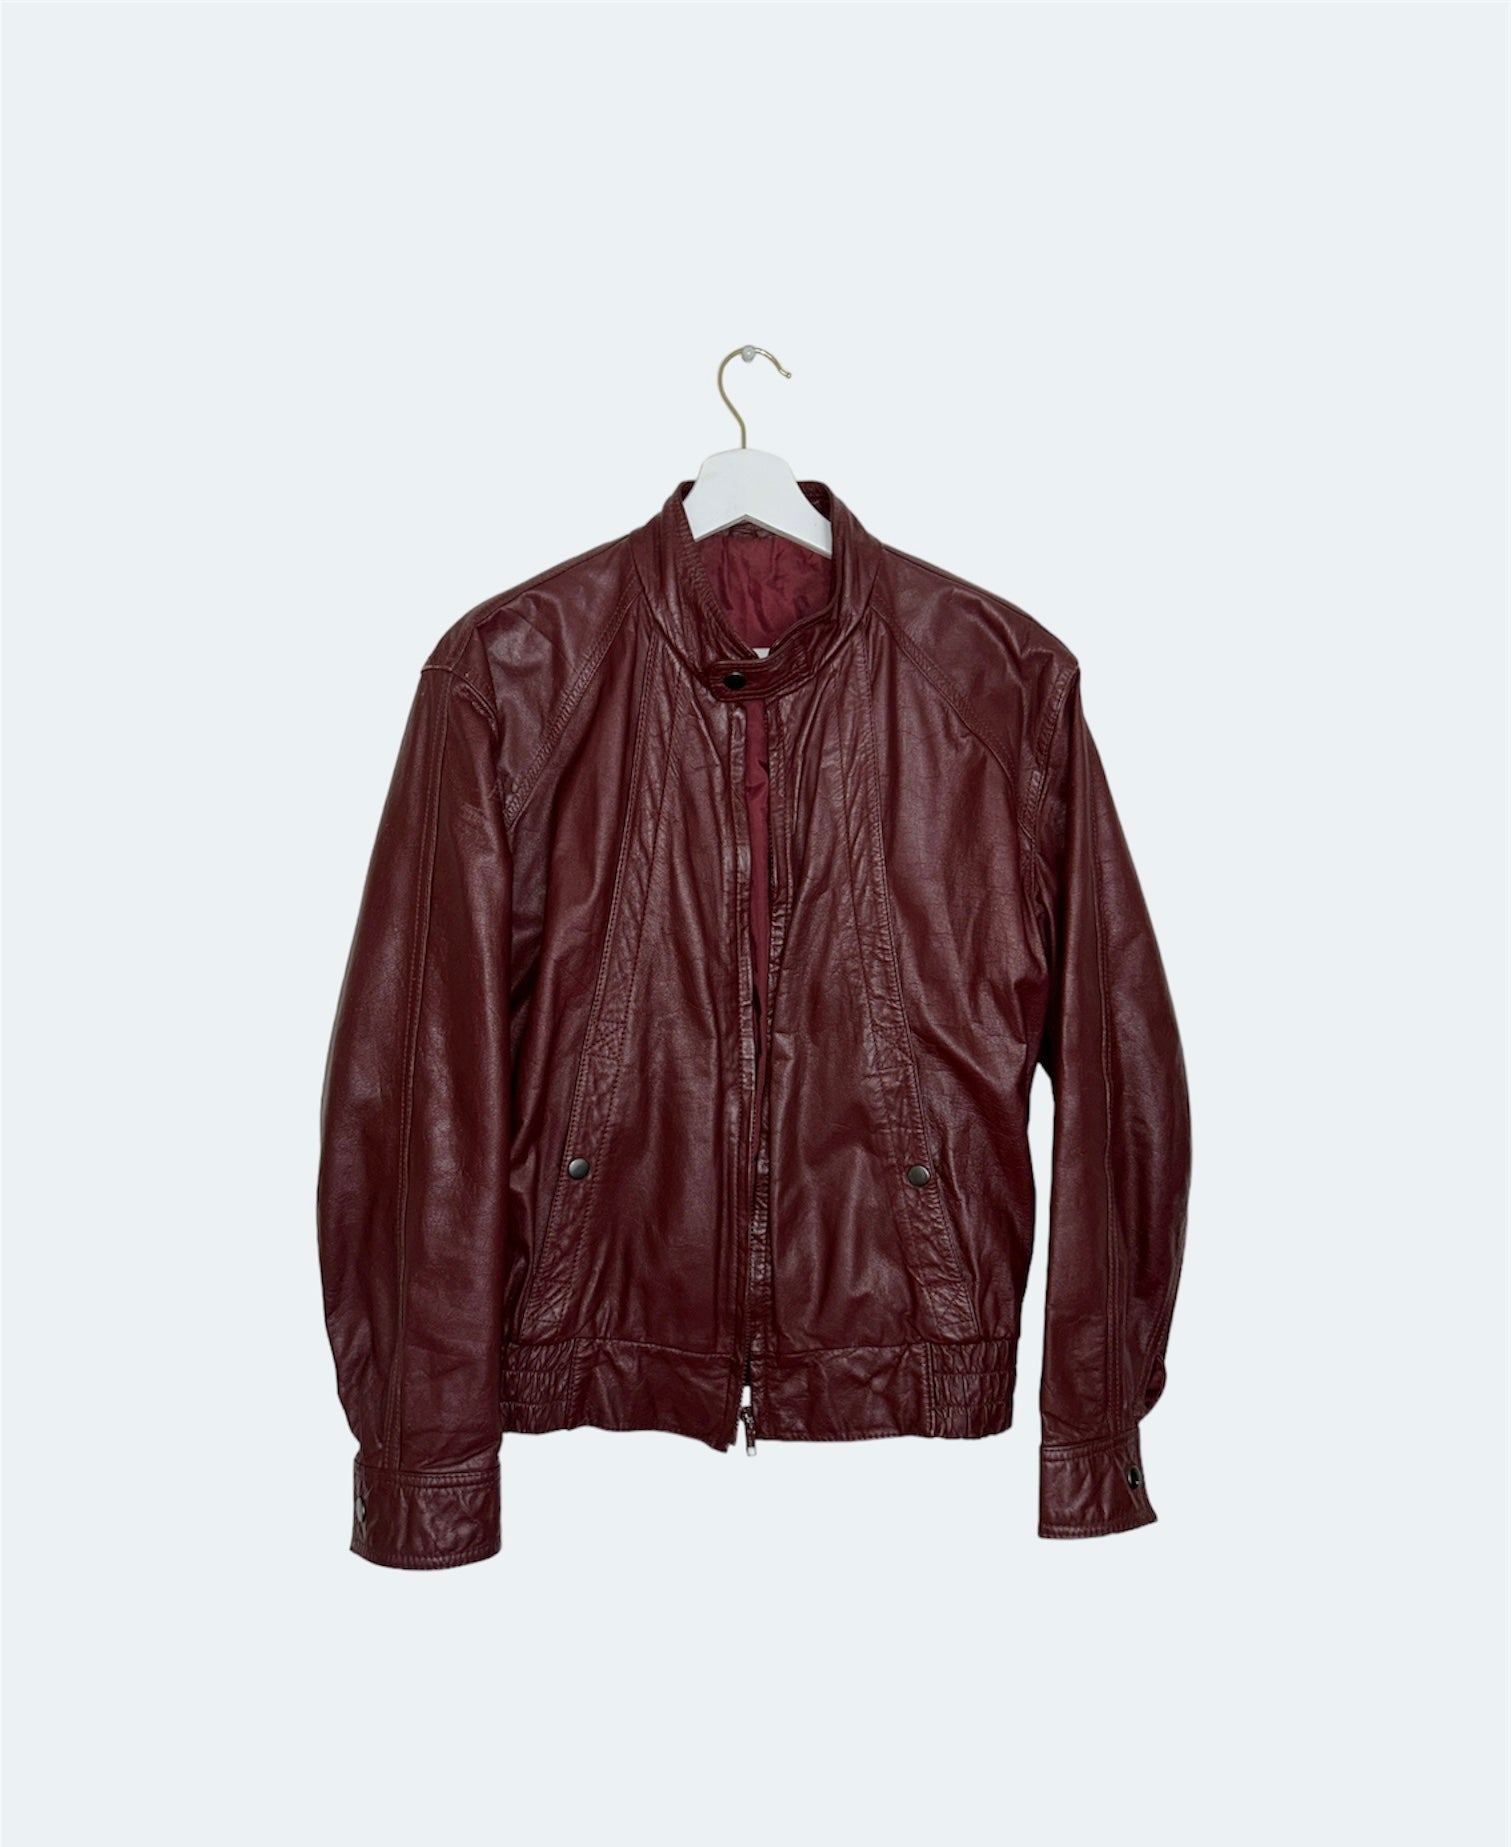 front of burgundy vintage leather jacket